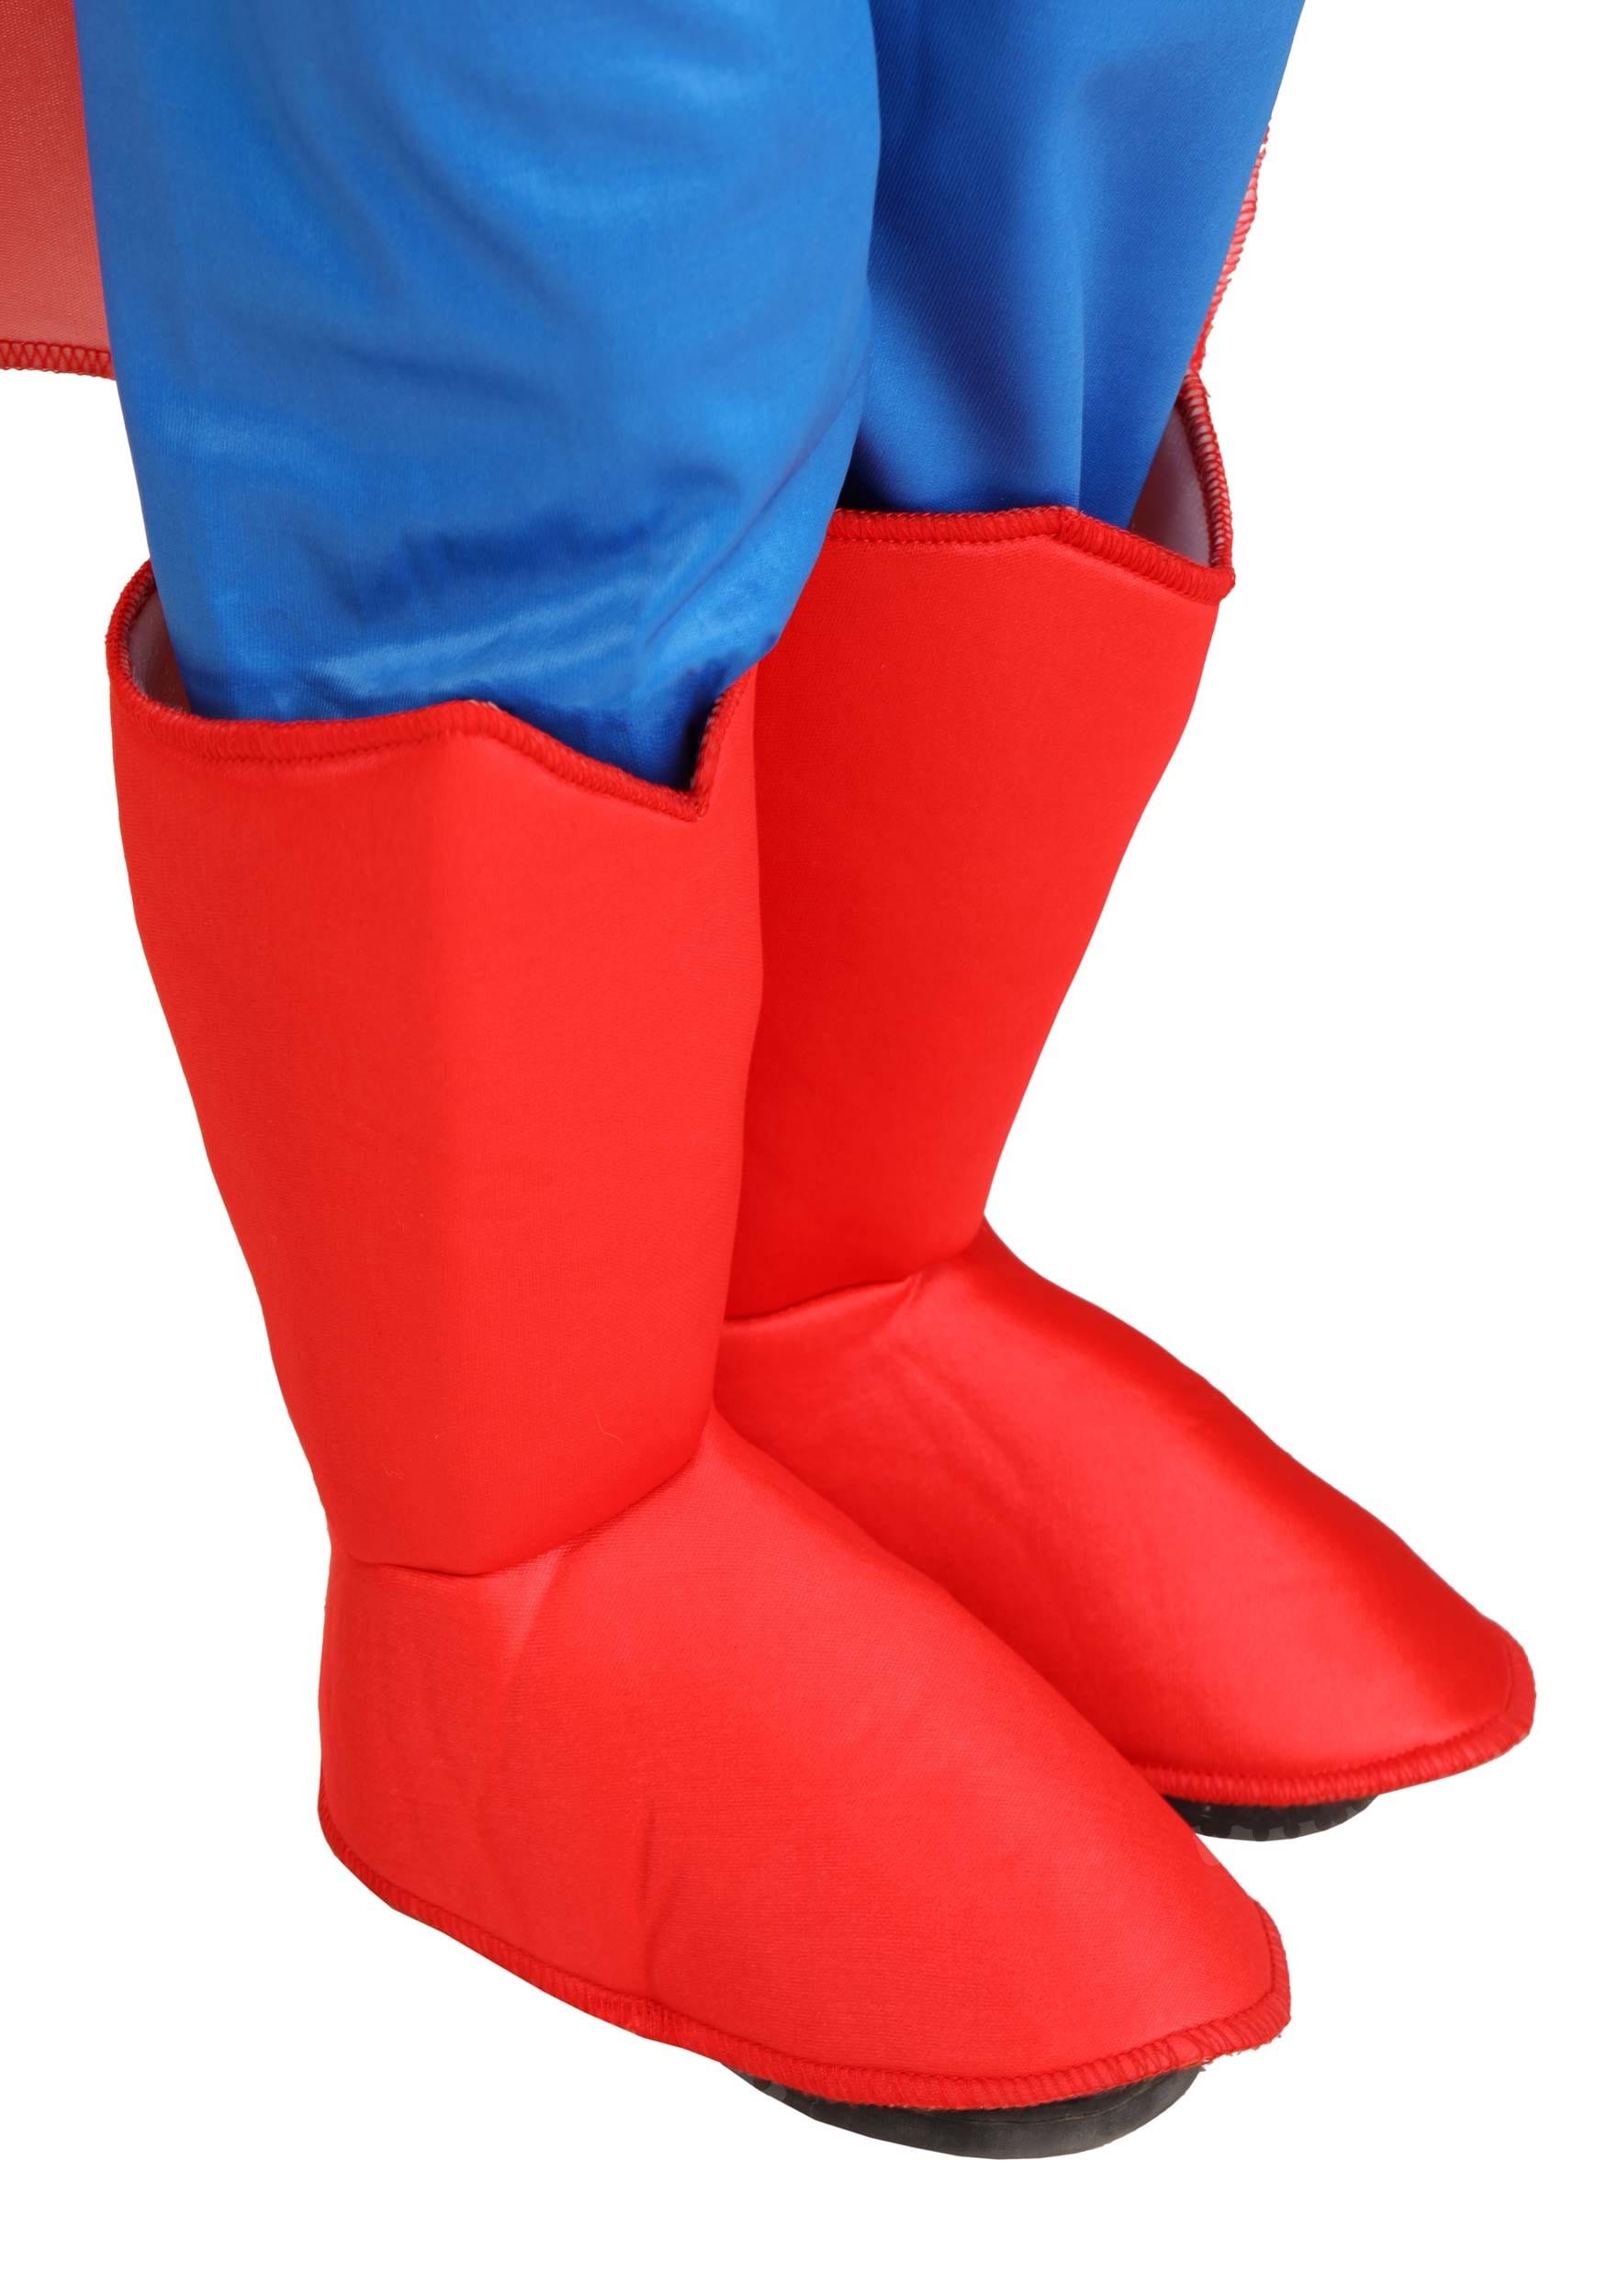 DC Comics Superman Toddler Costume